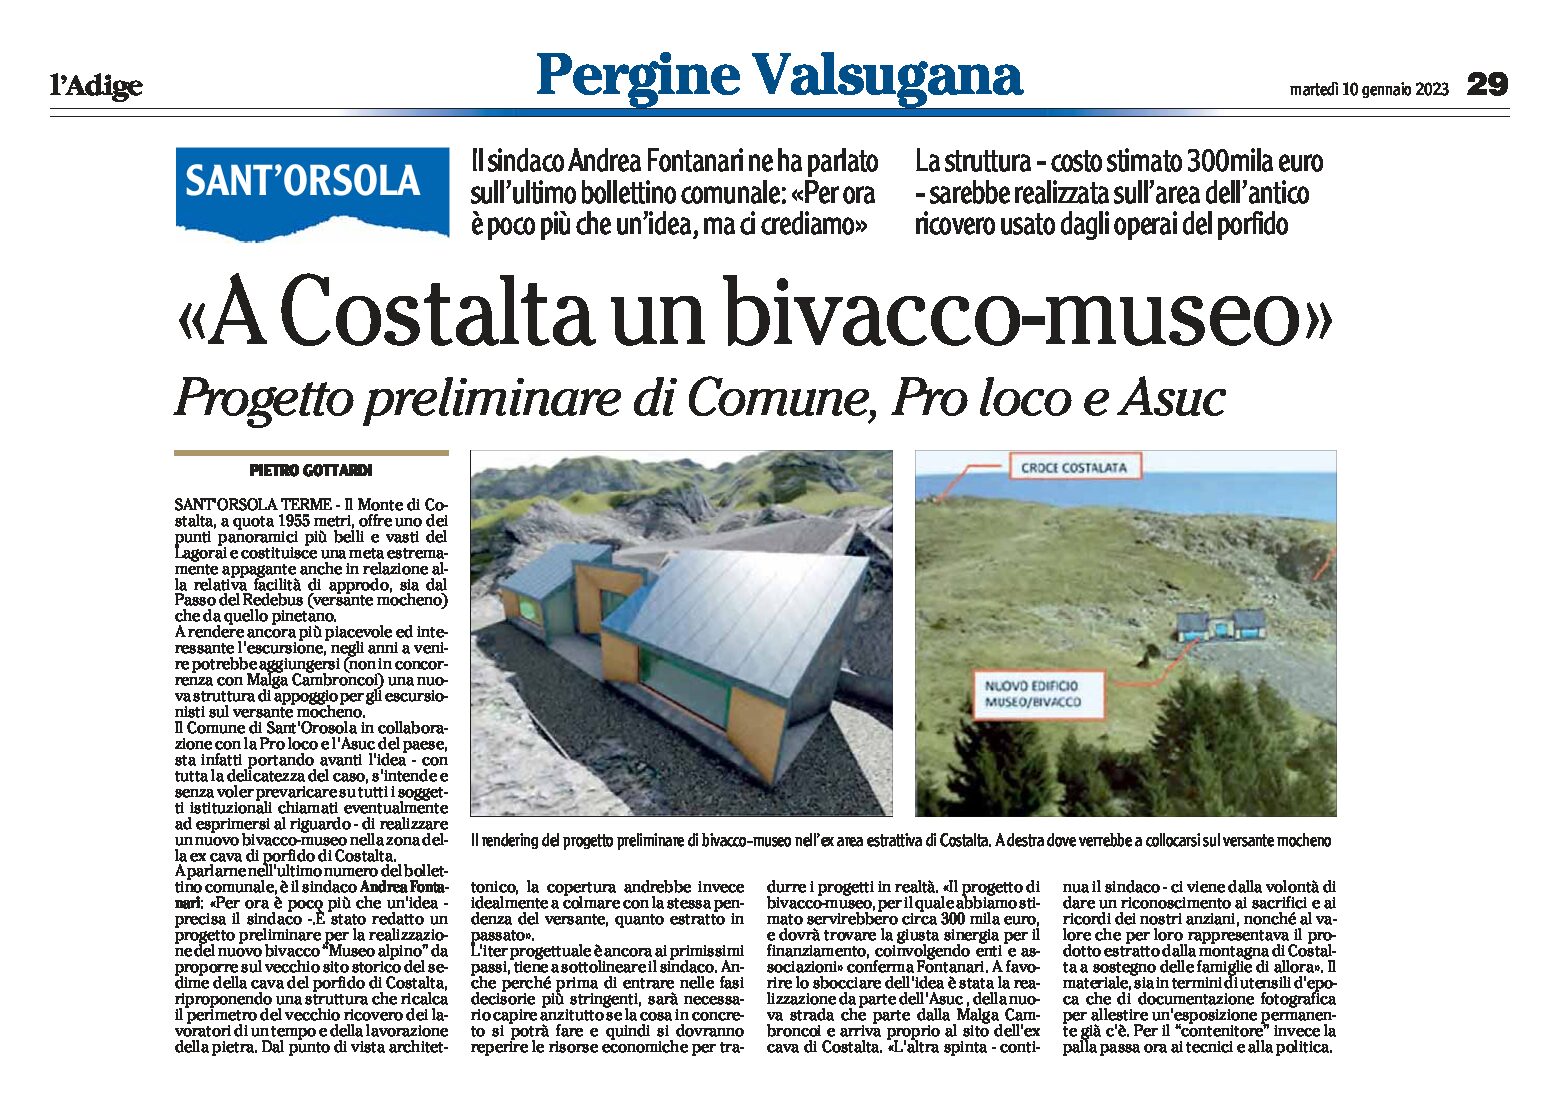 Sant’Orsola: rendering di un bivacco-museo a Costalta nella zona ex cava di porfido